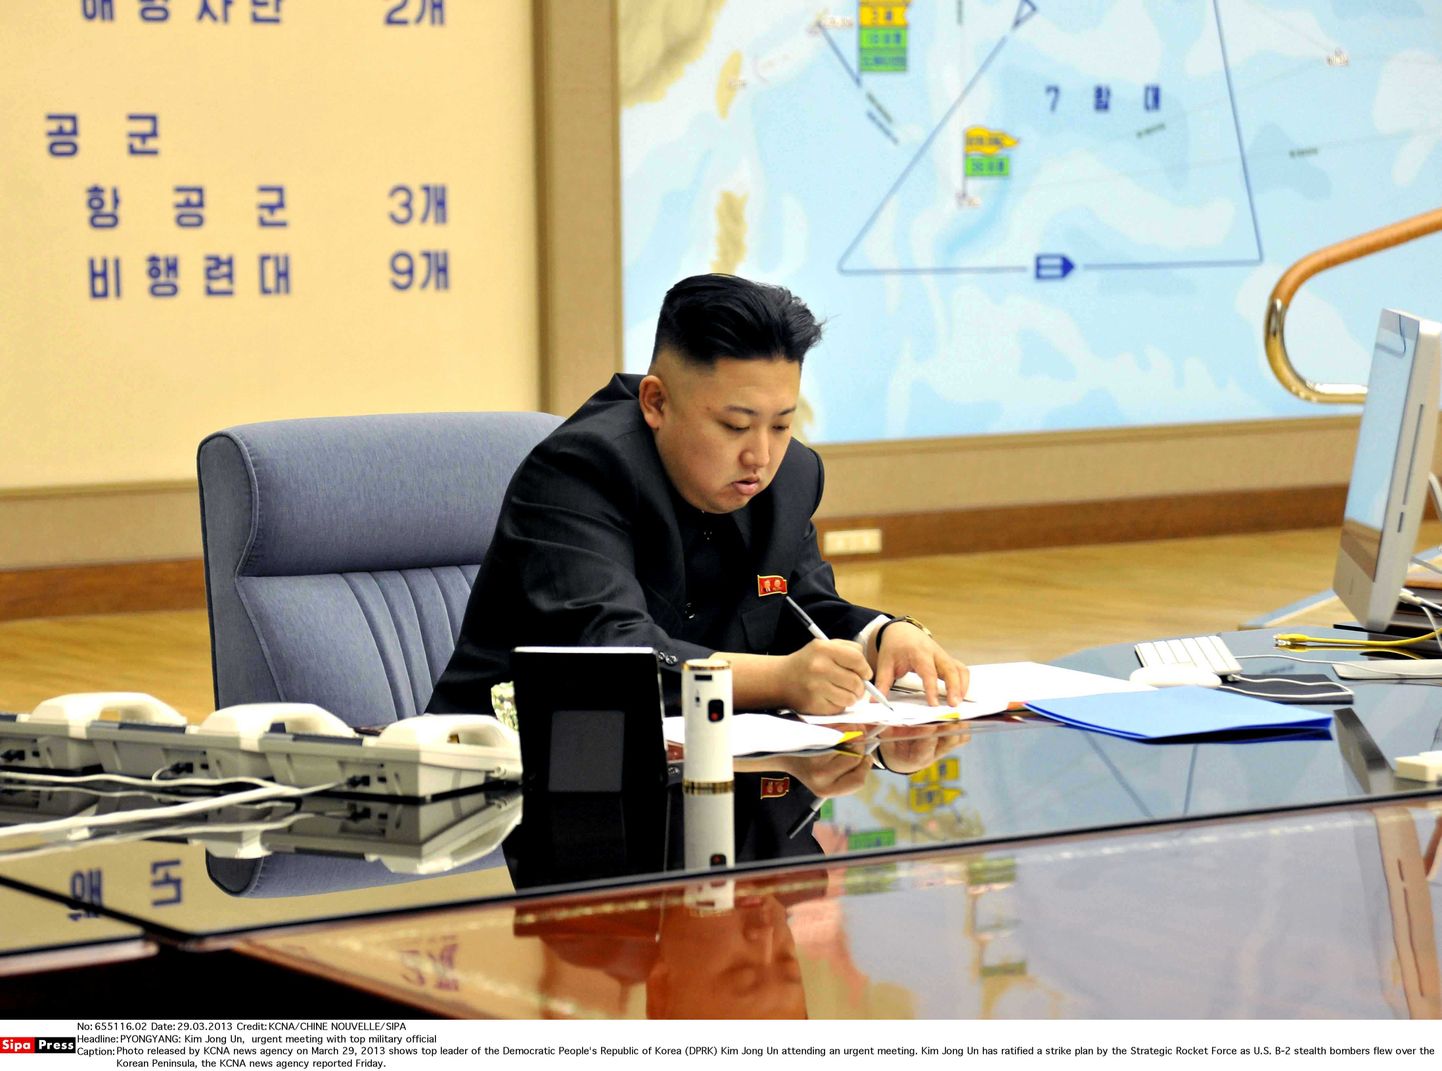 Põhja-Korea uudisteagentuuri KCNA kaudu 29. märtsil laia maailma levinud fotol istub Kim Jong-un firma Apple'i arvuti juures.